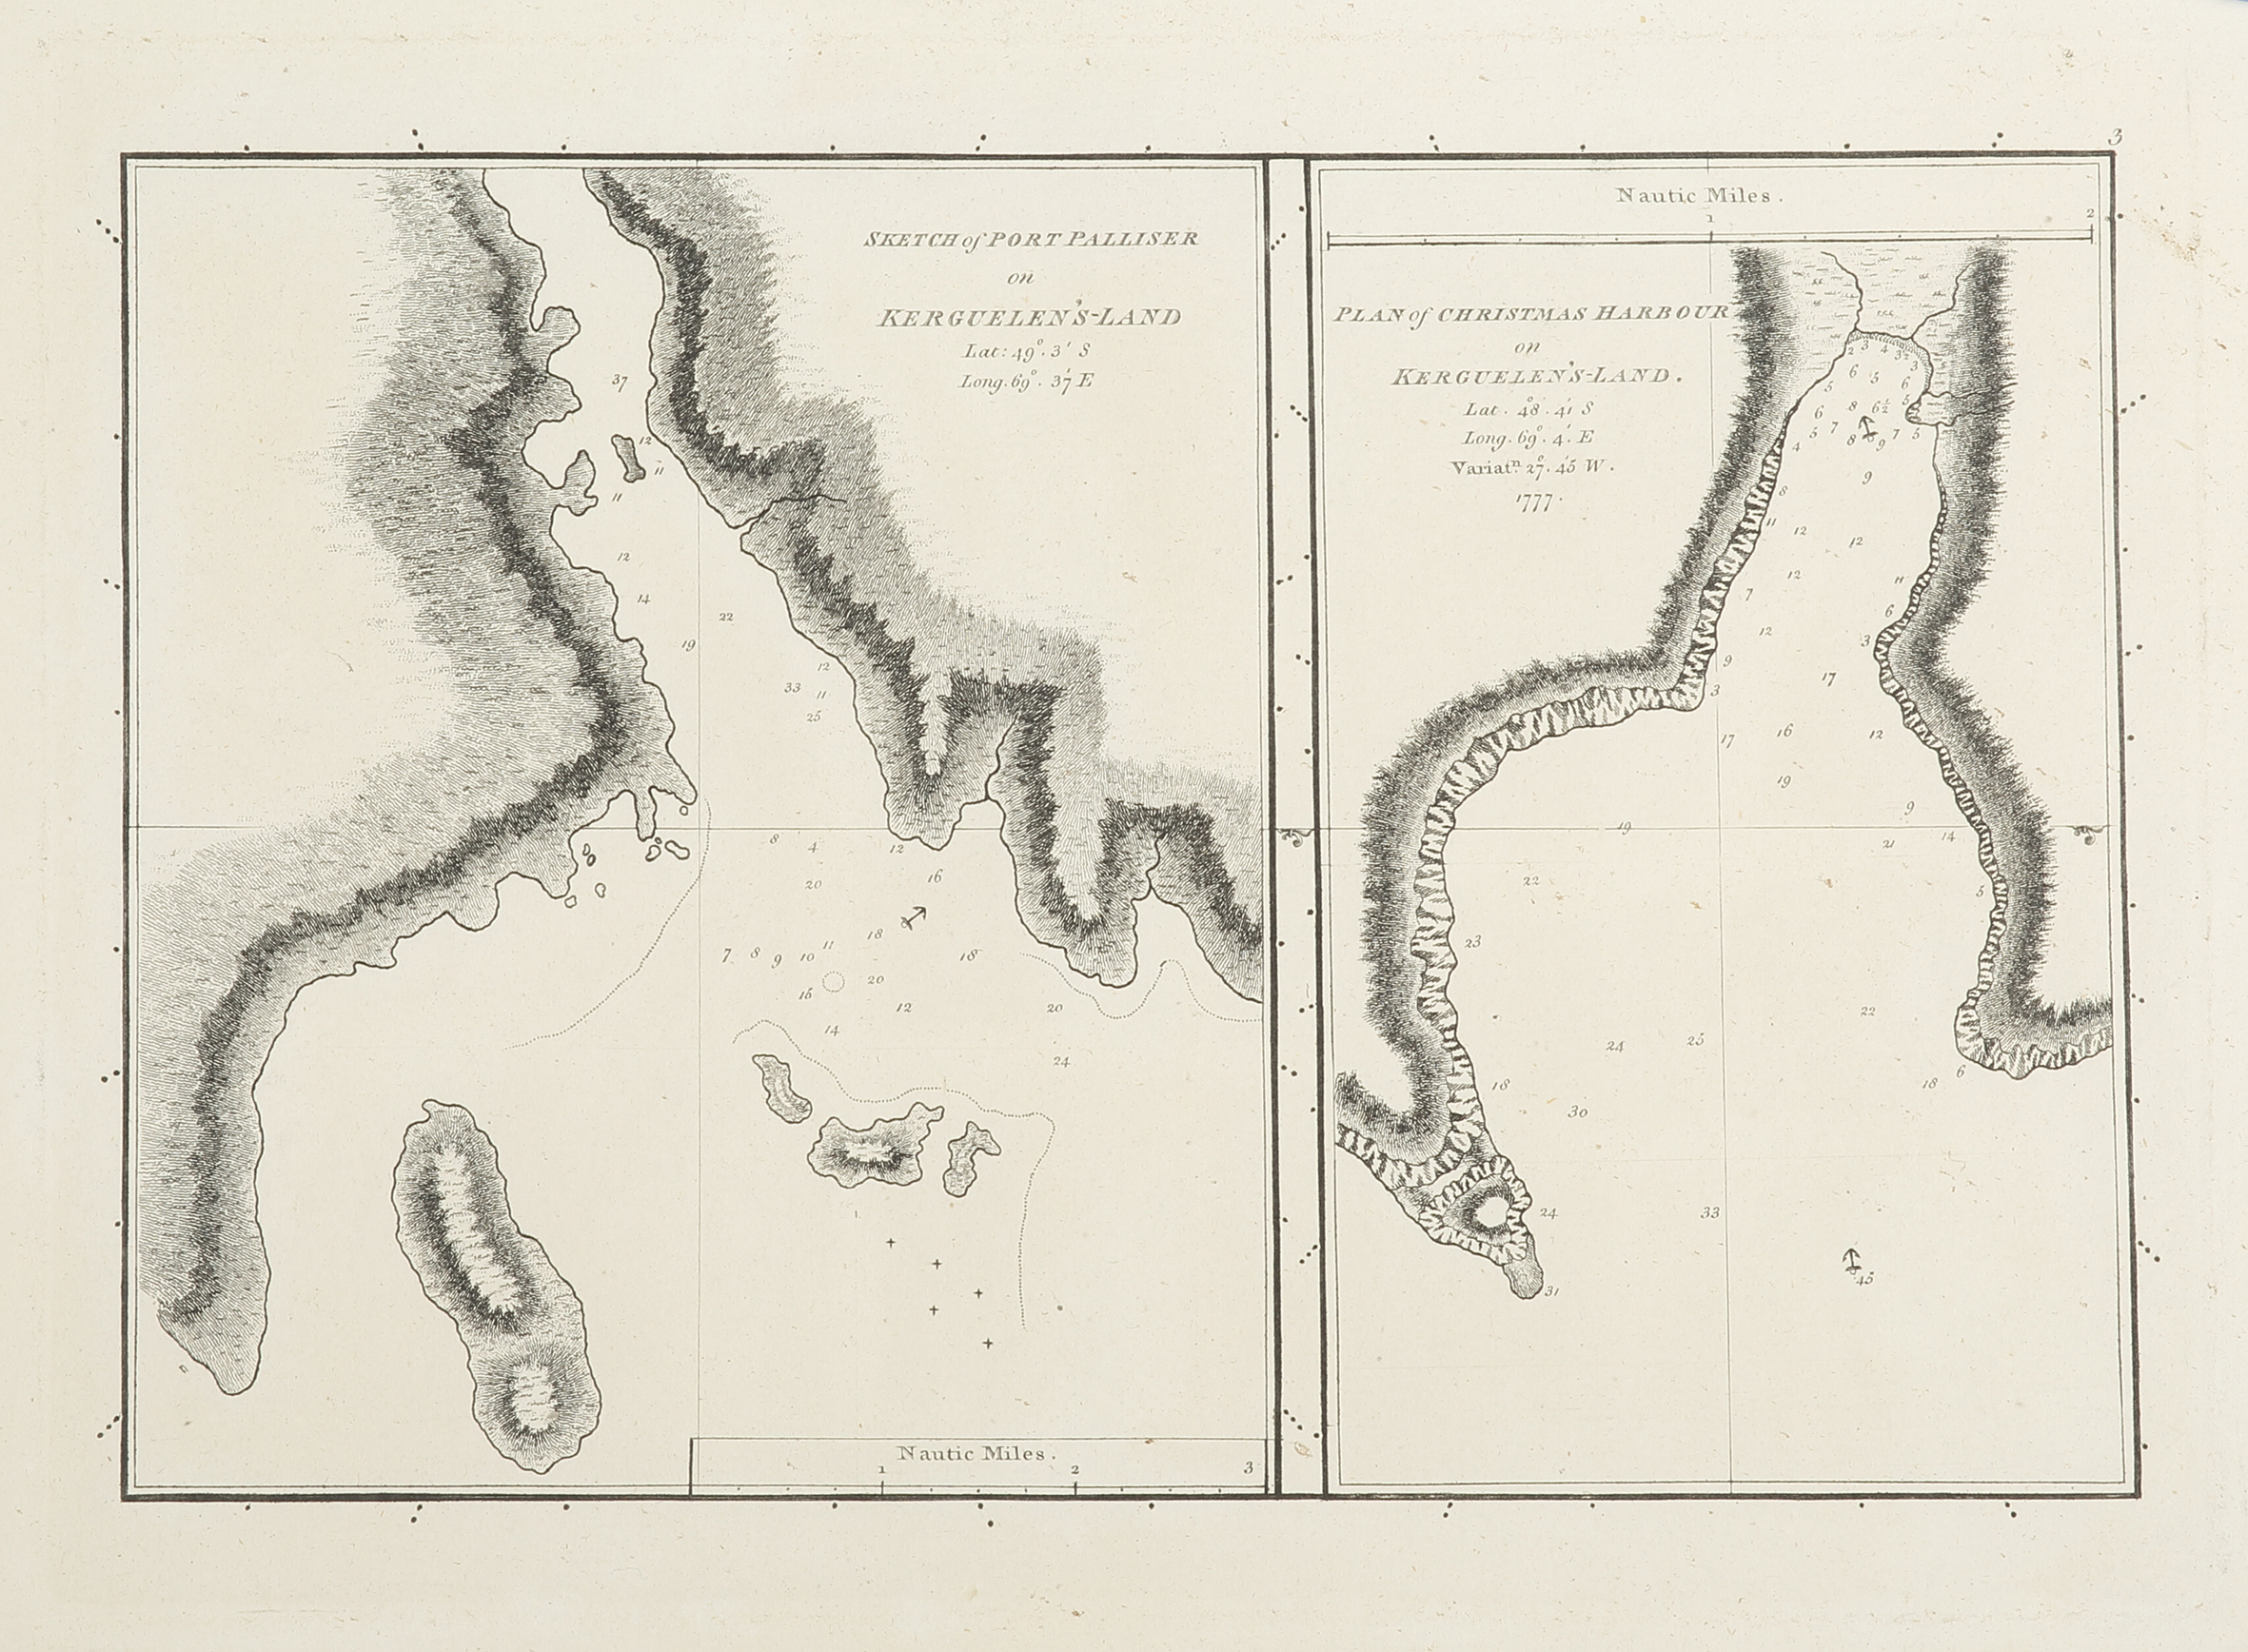 Sketch of Port Palliser on Kerguelen's Land Lat: 49°.3' S, Long.69° 37' E.  Plan of Christmas Harbour on Kerguelen's Land Lat: 48°.41' S, Long.69° 4 Variat.n.27° 45° W. 1777.' E - Antique Map from 1784